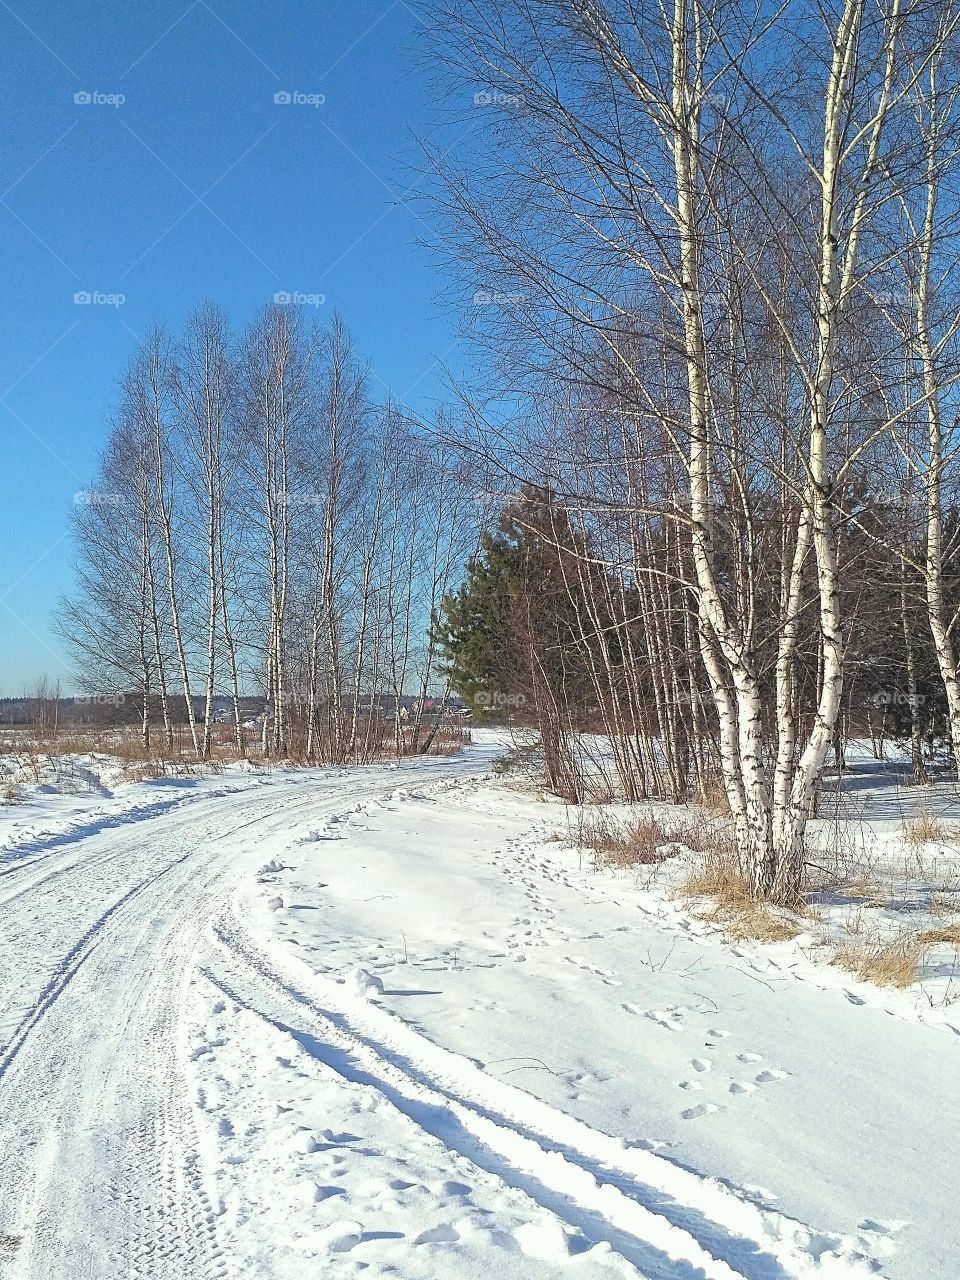 конец зимы, февральское утро, мороз и солнце, зимняя дорога, берёзы, сосны, синее небо,лес в дали.